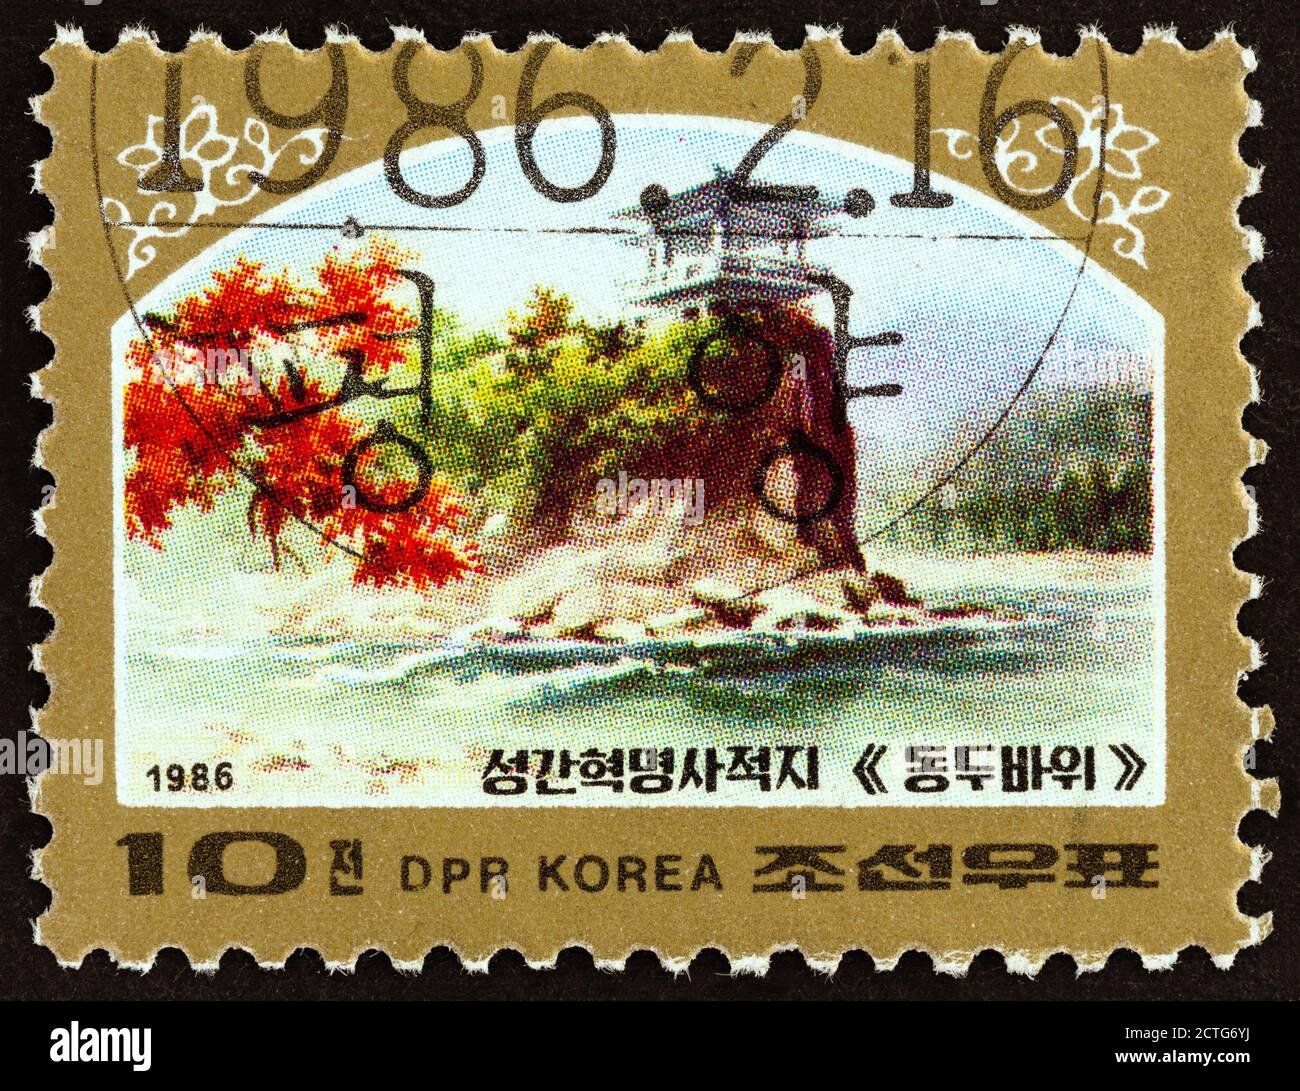 CORÉE DU NORD - VERS 1986 : un timbre imprimé en Corée du Nord montre le site révolutionnaire de Songga, vers 1986. Banque D'Images